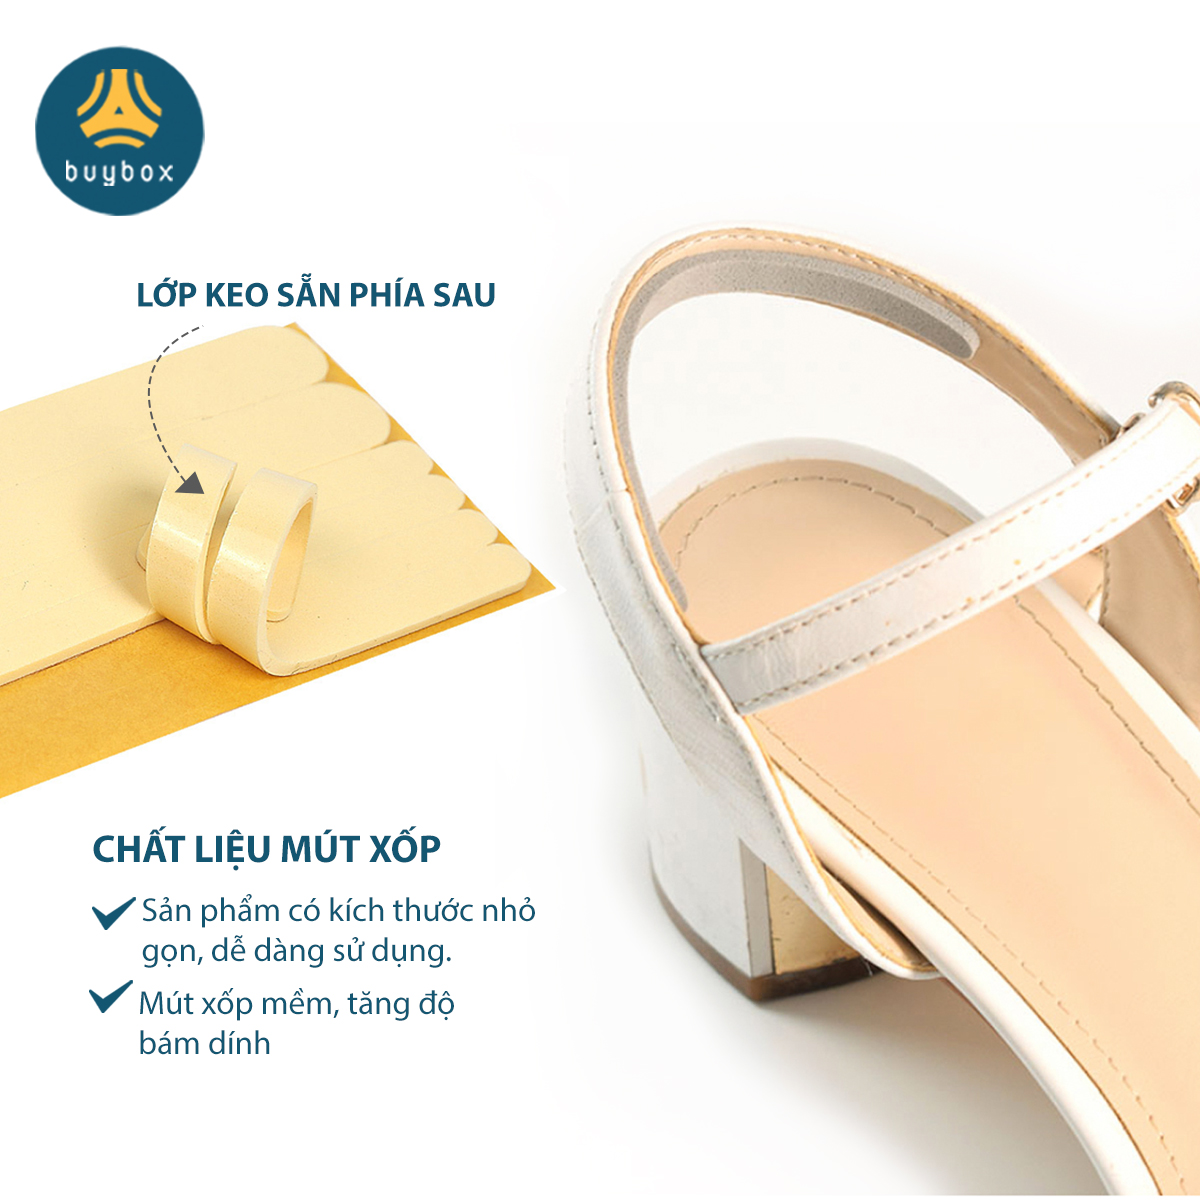 Miếng dán chống trầy gót chuyên dùng cho sandal, giày cao gót chất liệu EVA, silicone cao cấp - Buybox - BBPK282